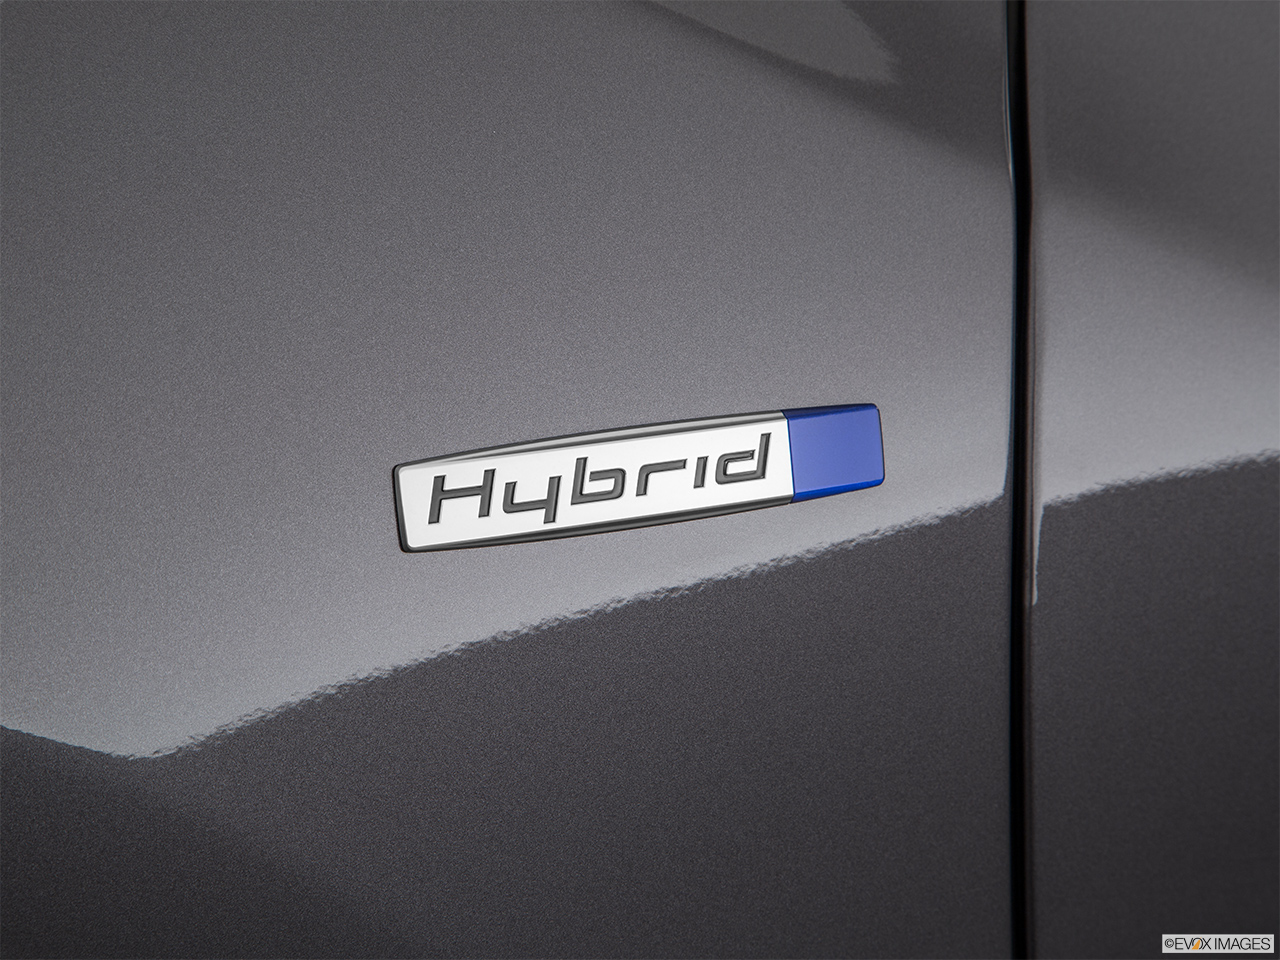 2020 Acura RLX Sport Hybrid SH-AWD Exterior Bonus Shots (no set spec) 